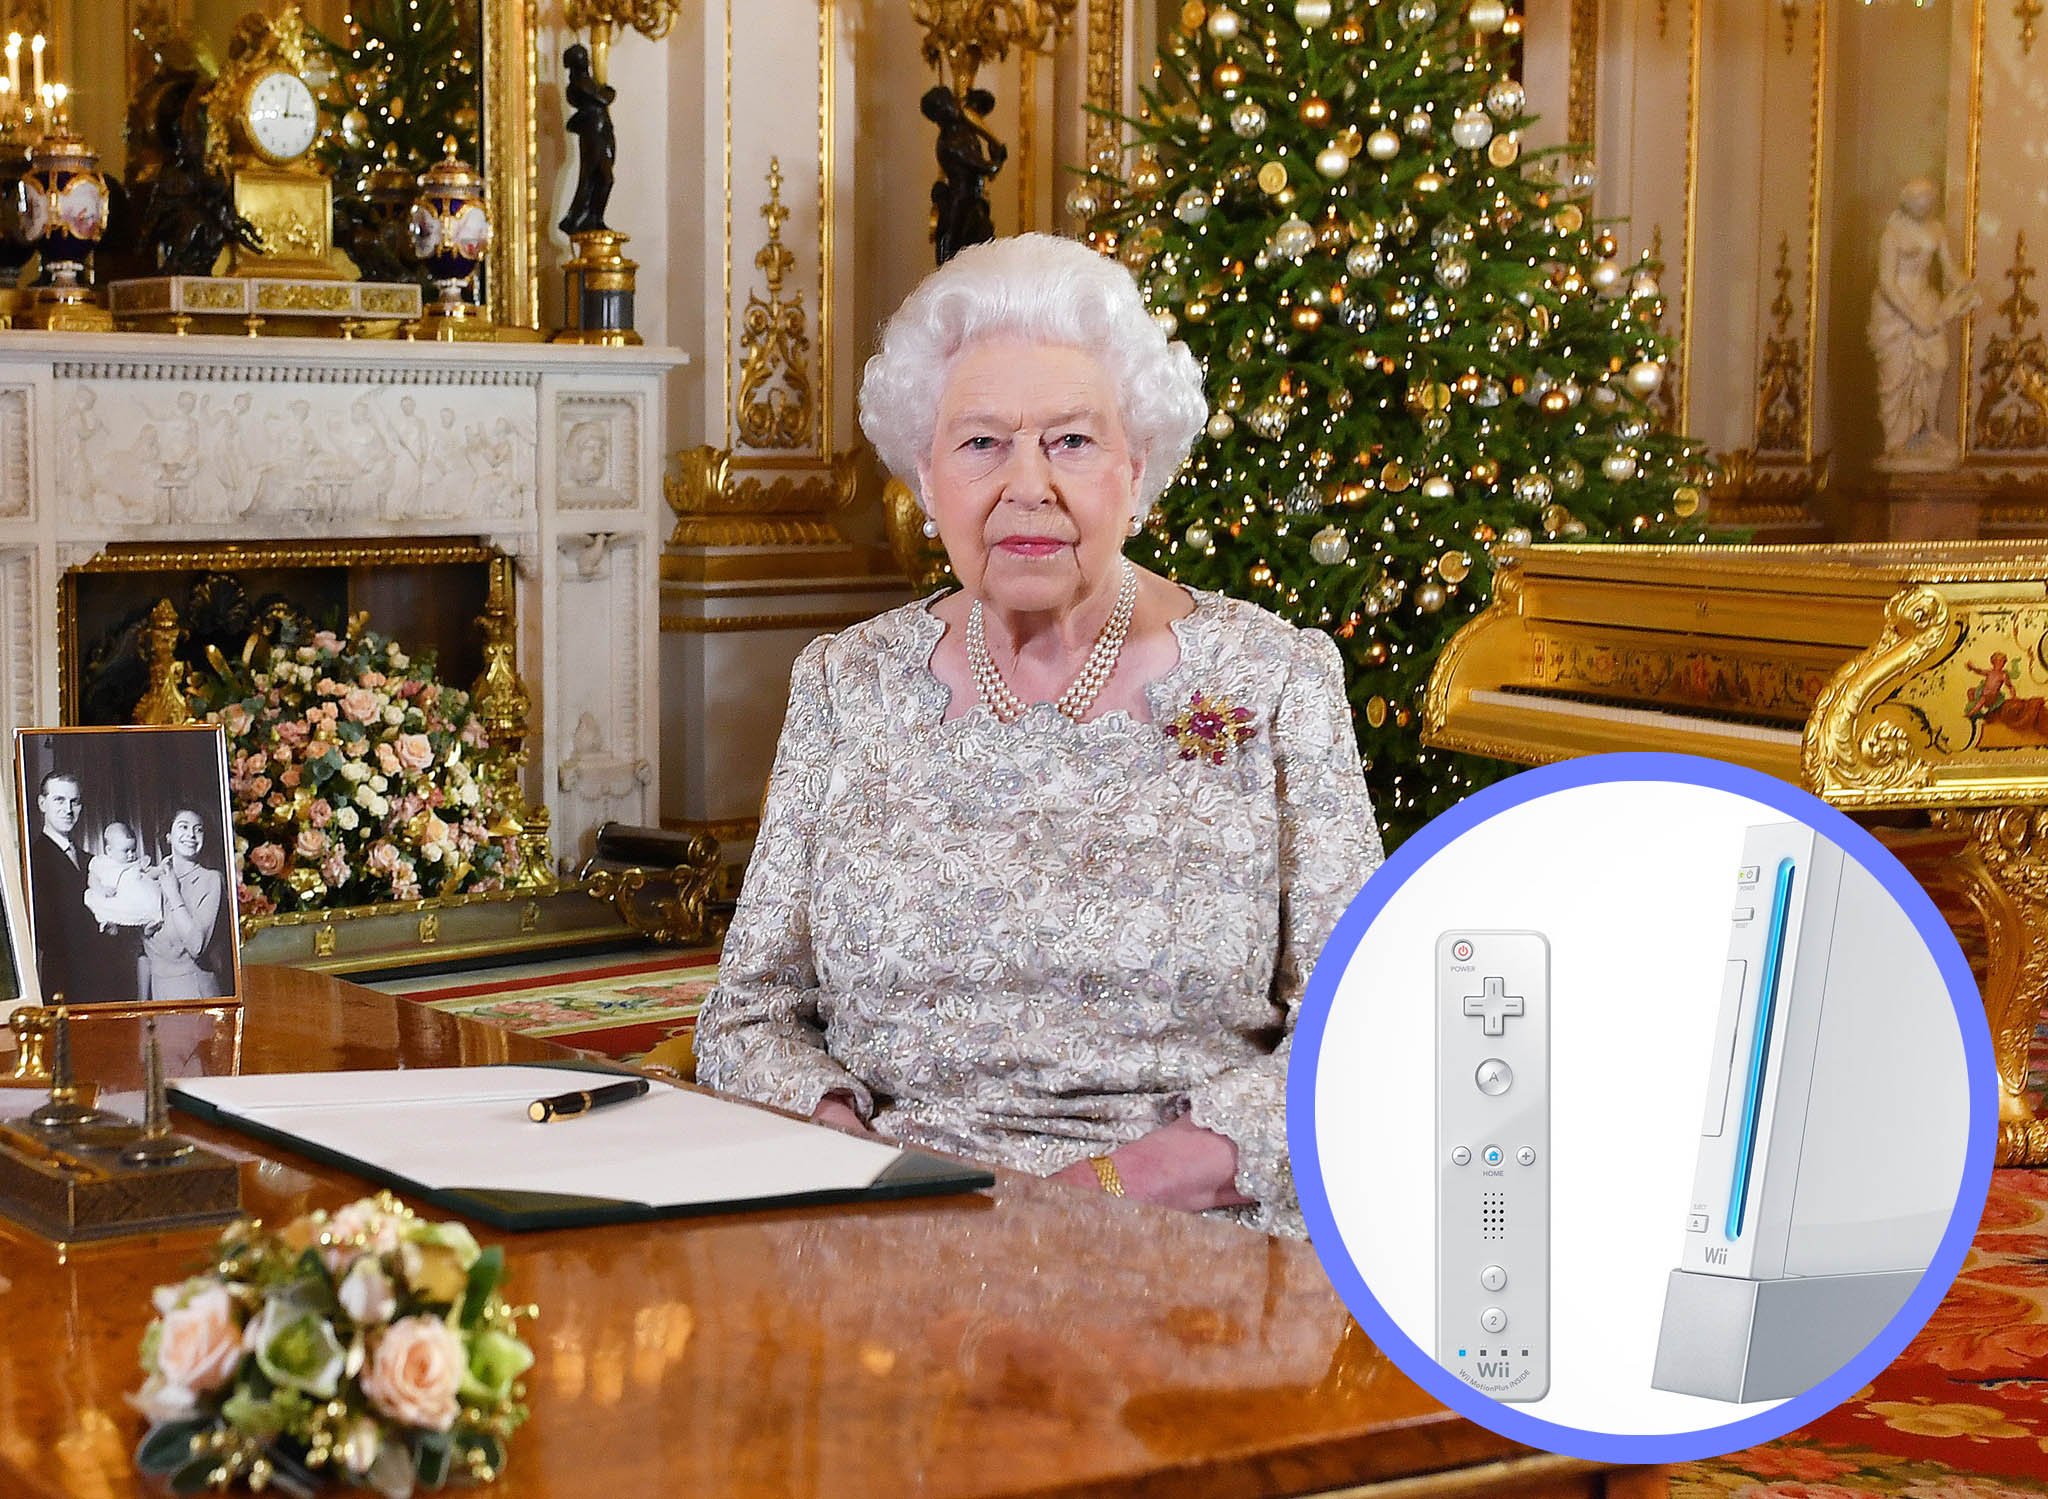 Nữ hoàng Elizabeth II, một fan chân chính của chiếc máy Nintendo Wii